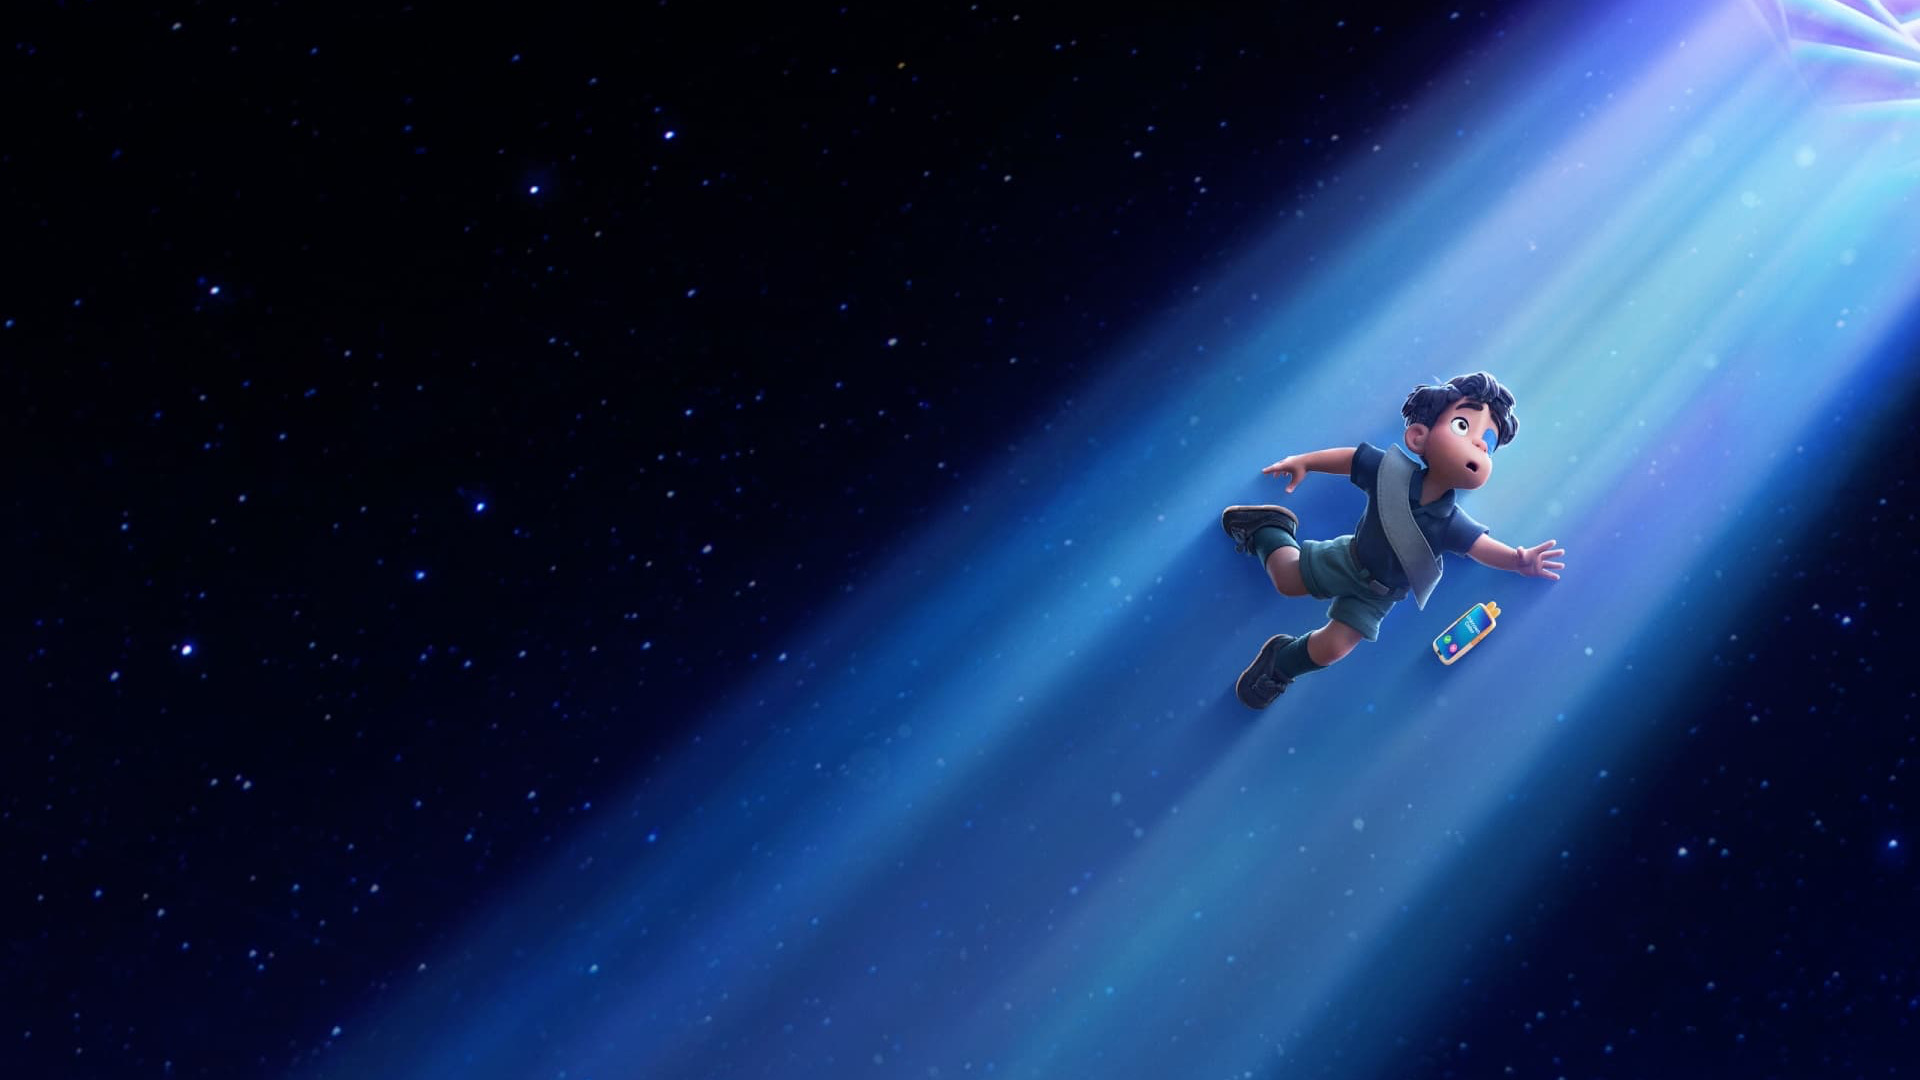 Pour son prochain film, Pixar a décidé d'aller loin... très loin